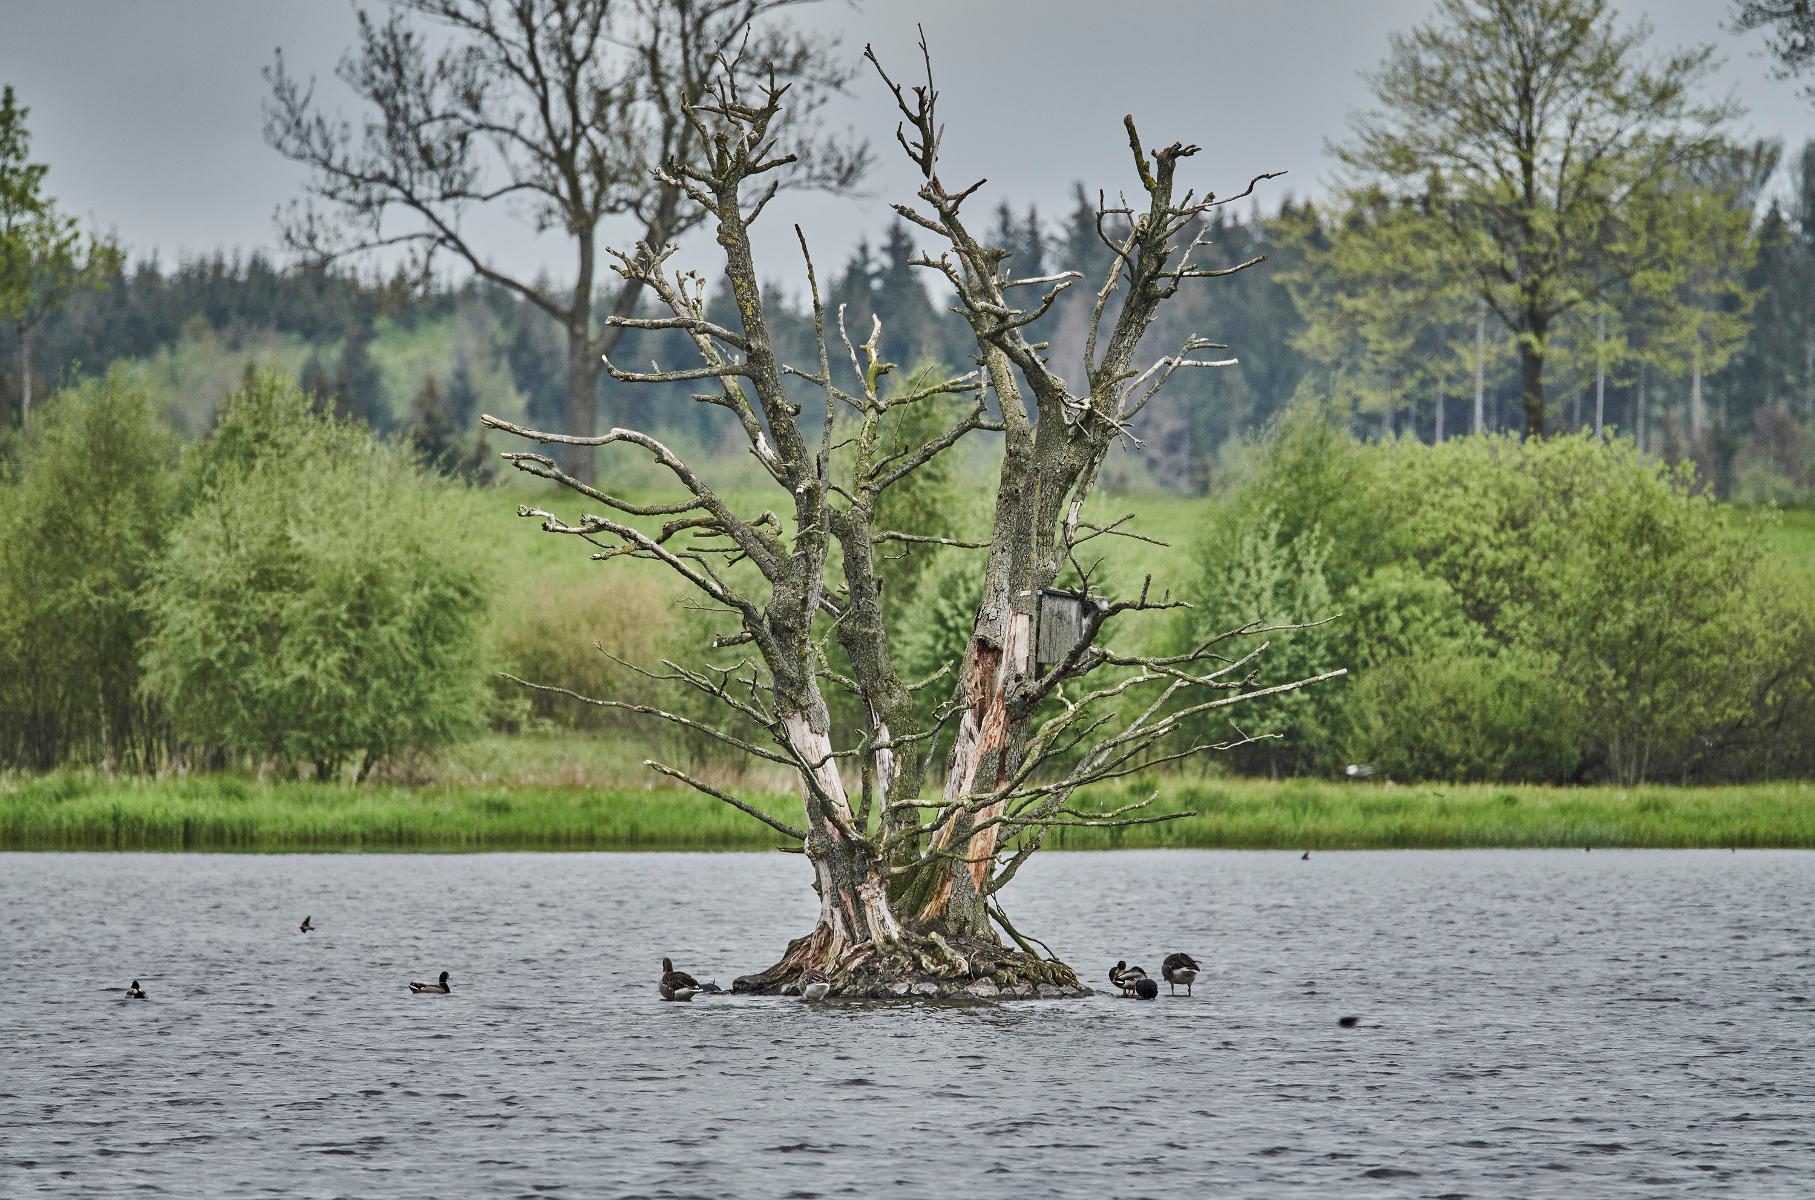 In der Gemeinde gibt es nicht weniger als sechs Naturschutzgebiete, darunter auch der Ober-Mooser-See, bekannt für seine seltenen Vogelarten. Im Sommer bietet der Campingpark am Nieder-Mooser-See gute Möglichkeiten zum Baden und Entspannen. Kut...